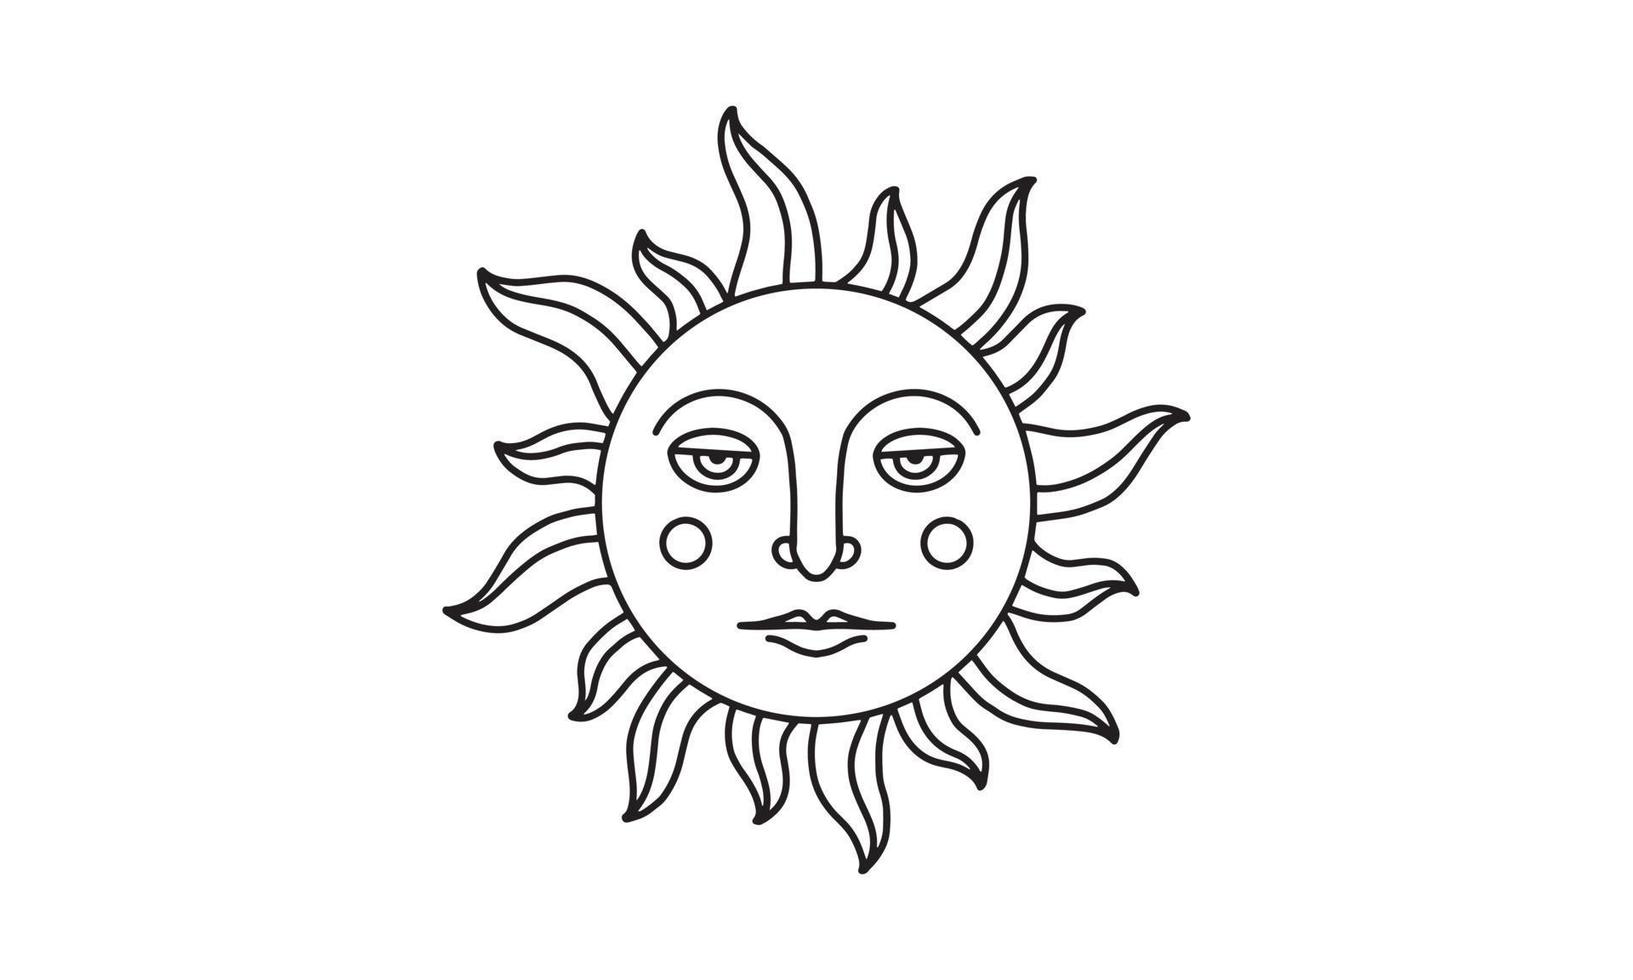 illustration de soleil bohème en illustration vectorielle. élément mystique de style bohème avec visage. élément créatif pour la conception, le tatouage, l'autocollant, etc. une illustration d'objet sur fond blanc. vecteur